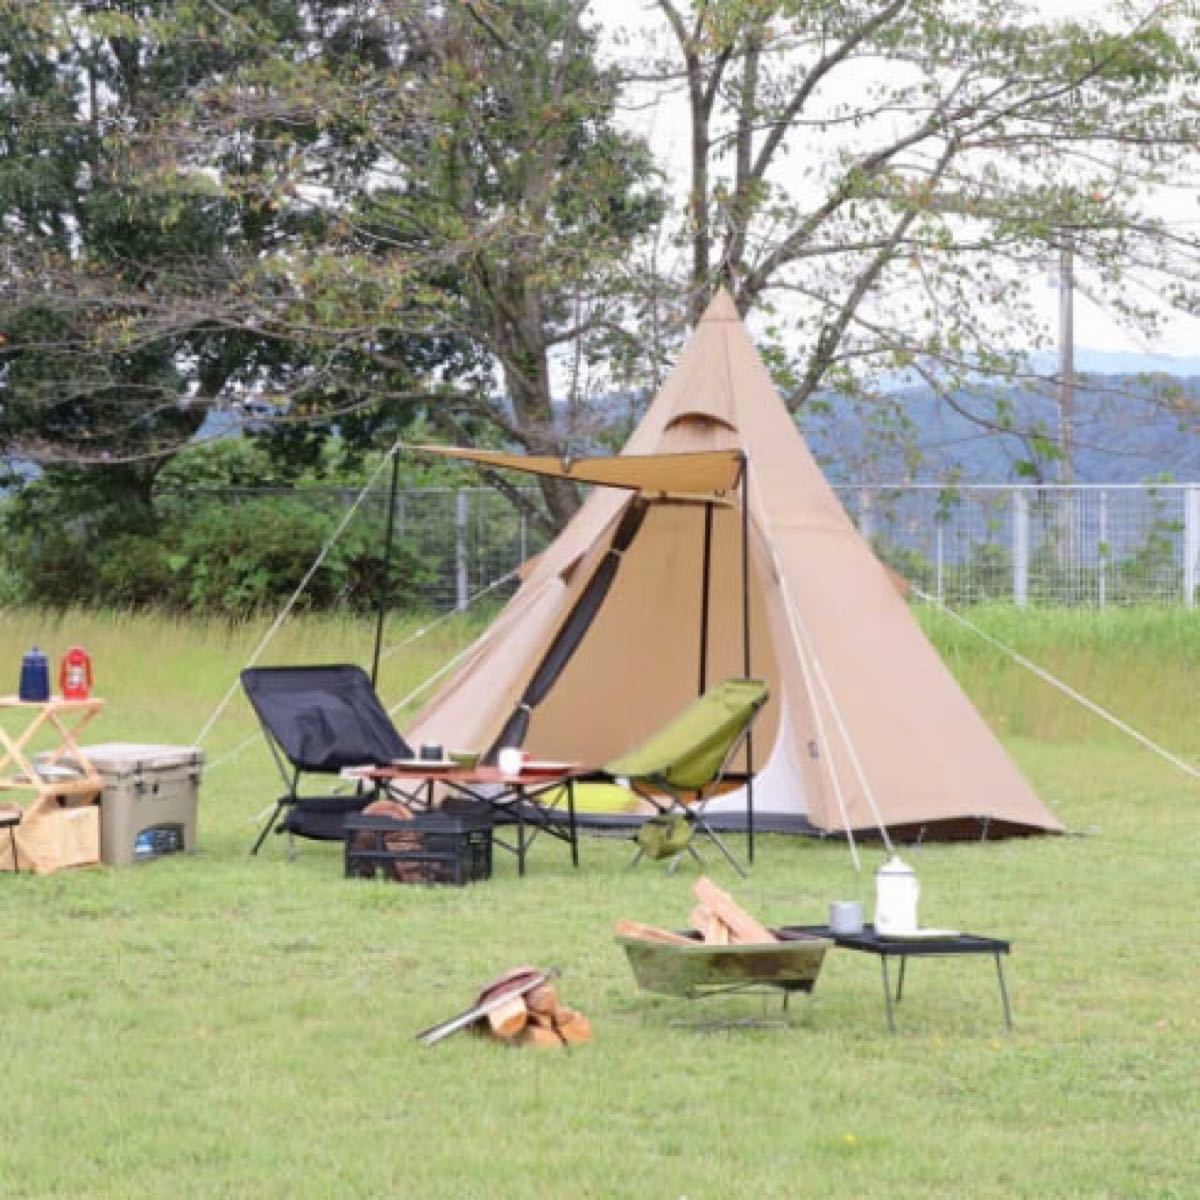 イグニオ キャンプ テント ティピーテント ワンポールテント ソロテント ソロキャンプ 一人用 2人用 IGNIO